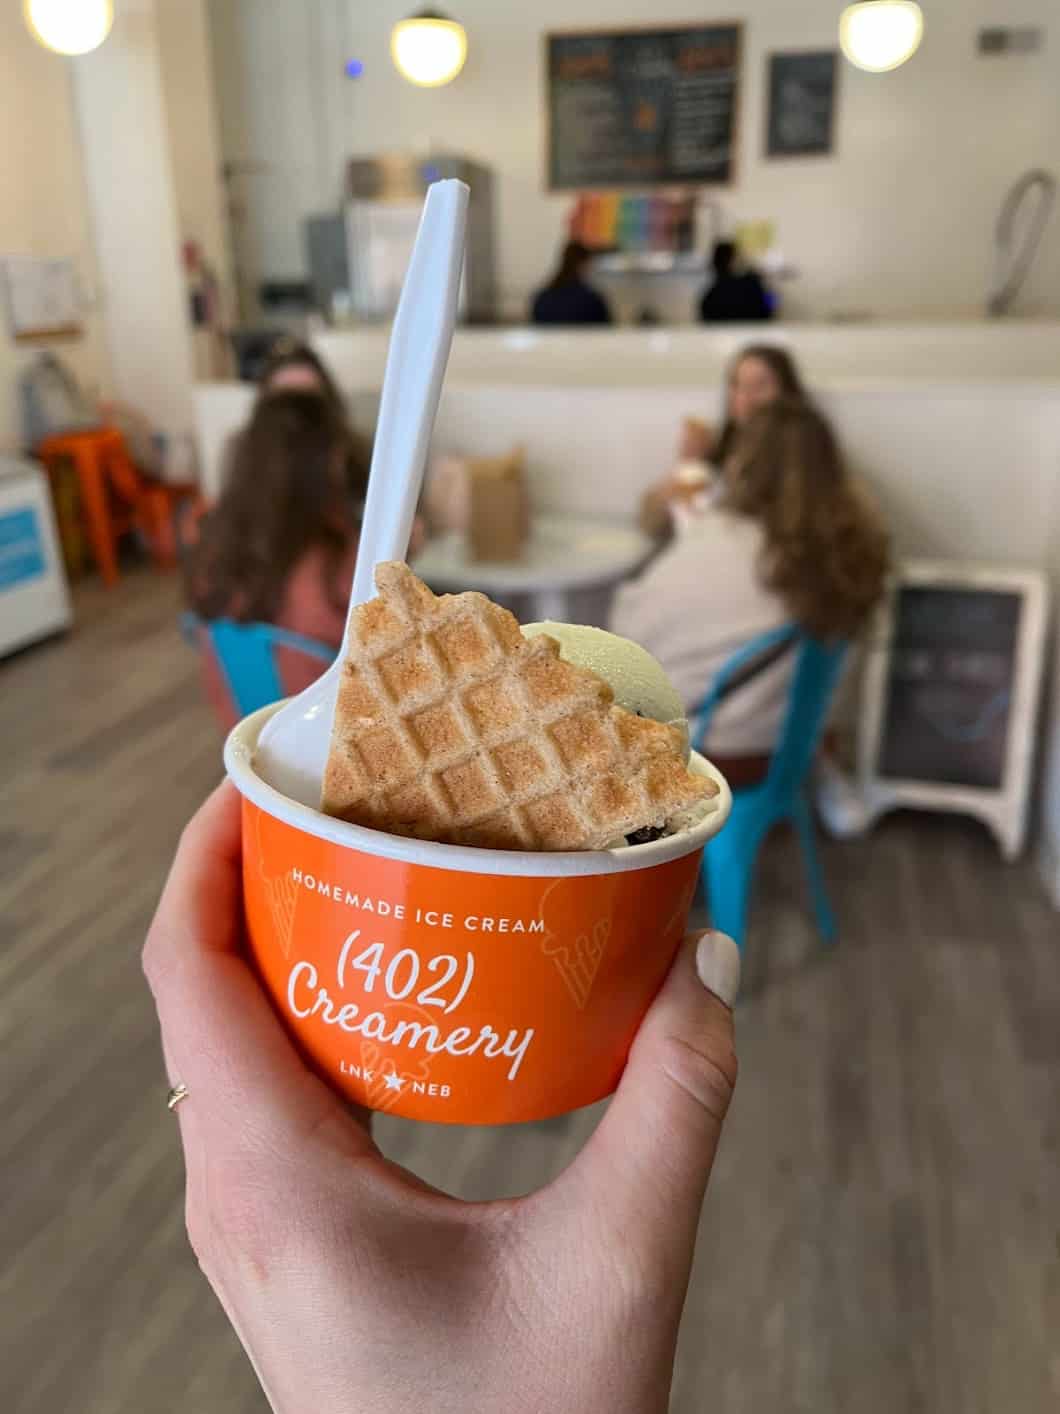 Best things to do in Lincoln Nebraska - Allea Grummert - Ice cream from 402 Creamery